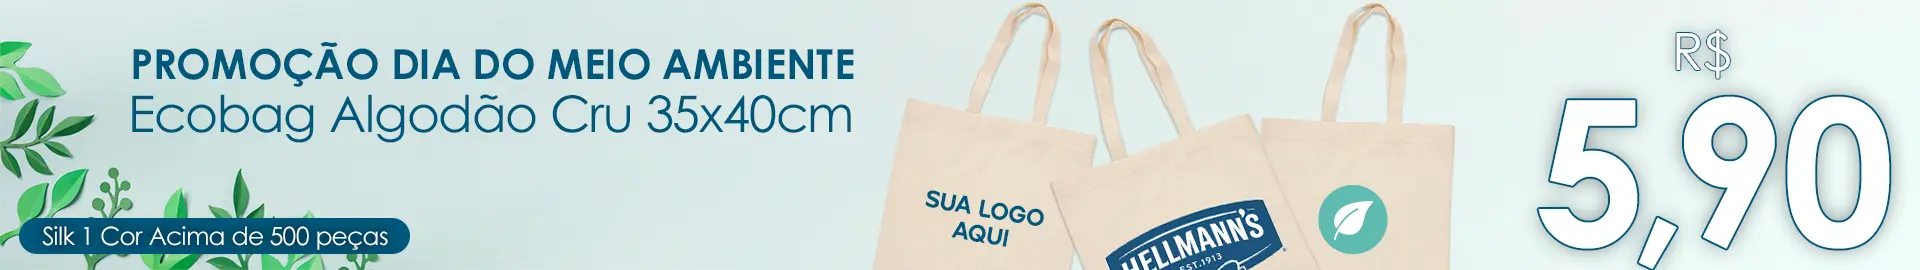 Banner Promoção Ecobag de Algodão Cru Personalizada